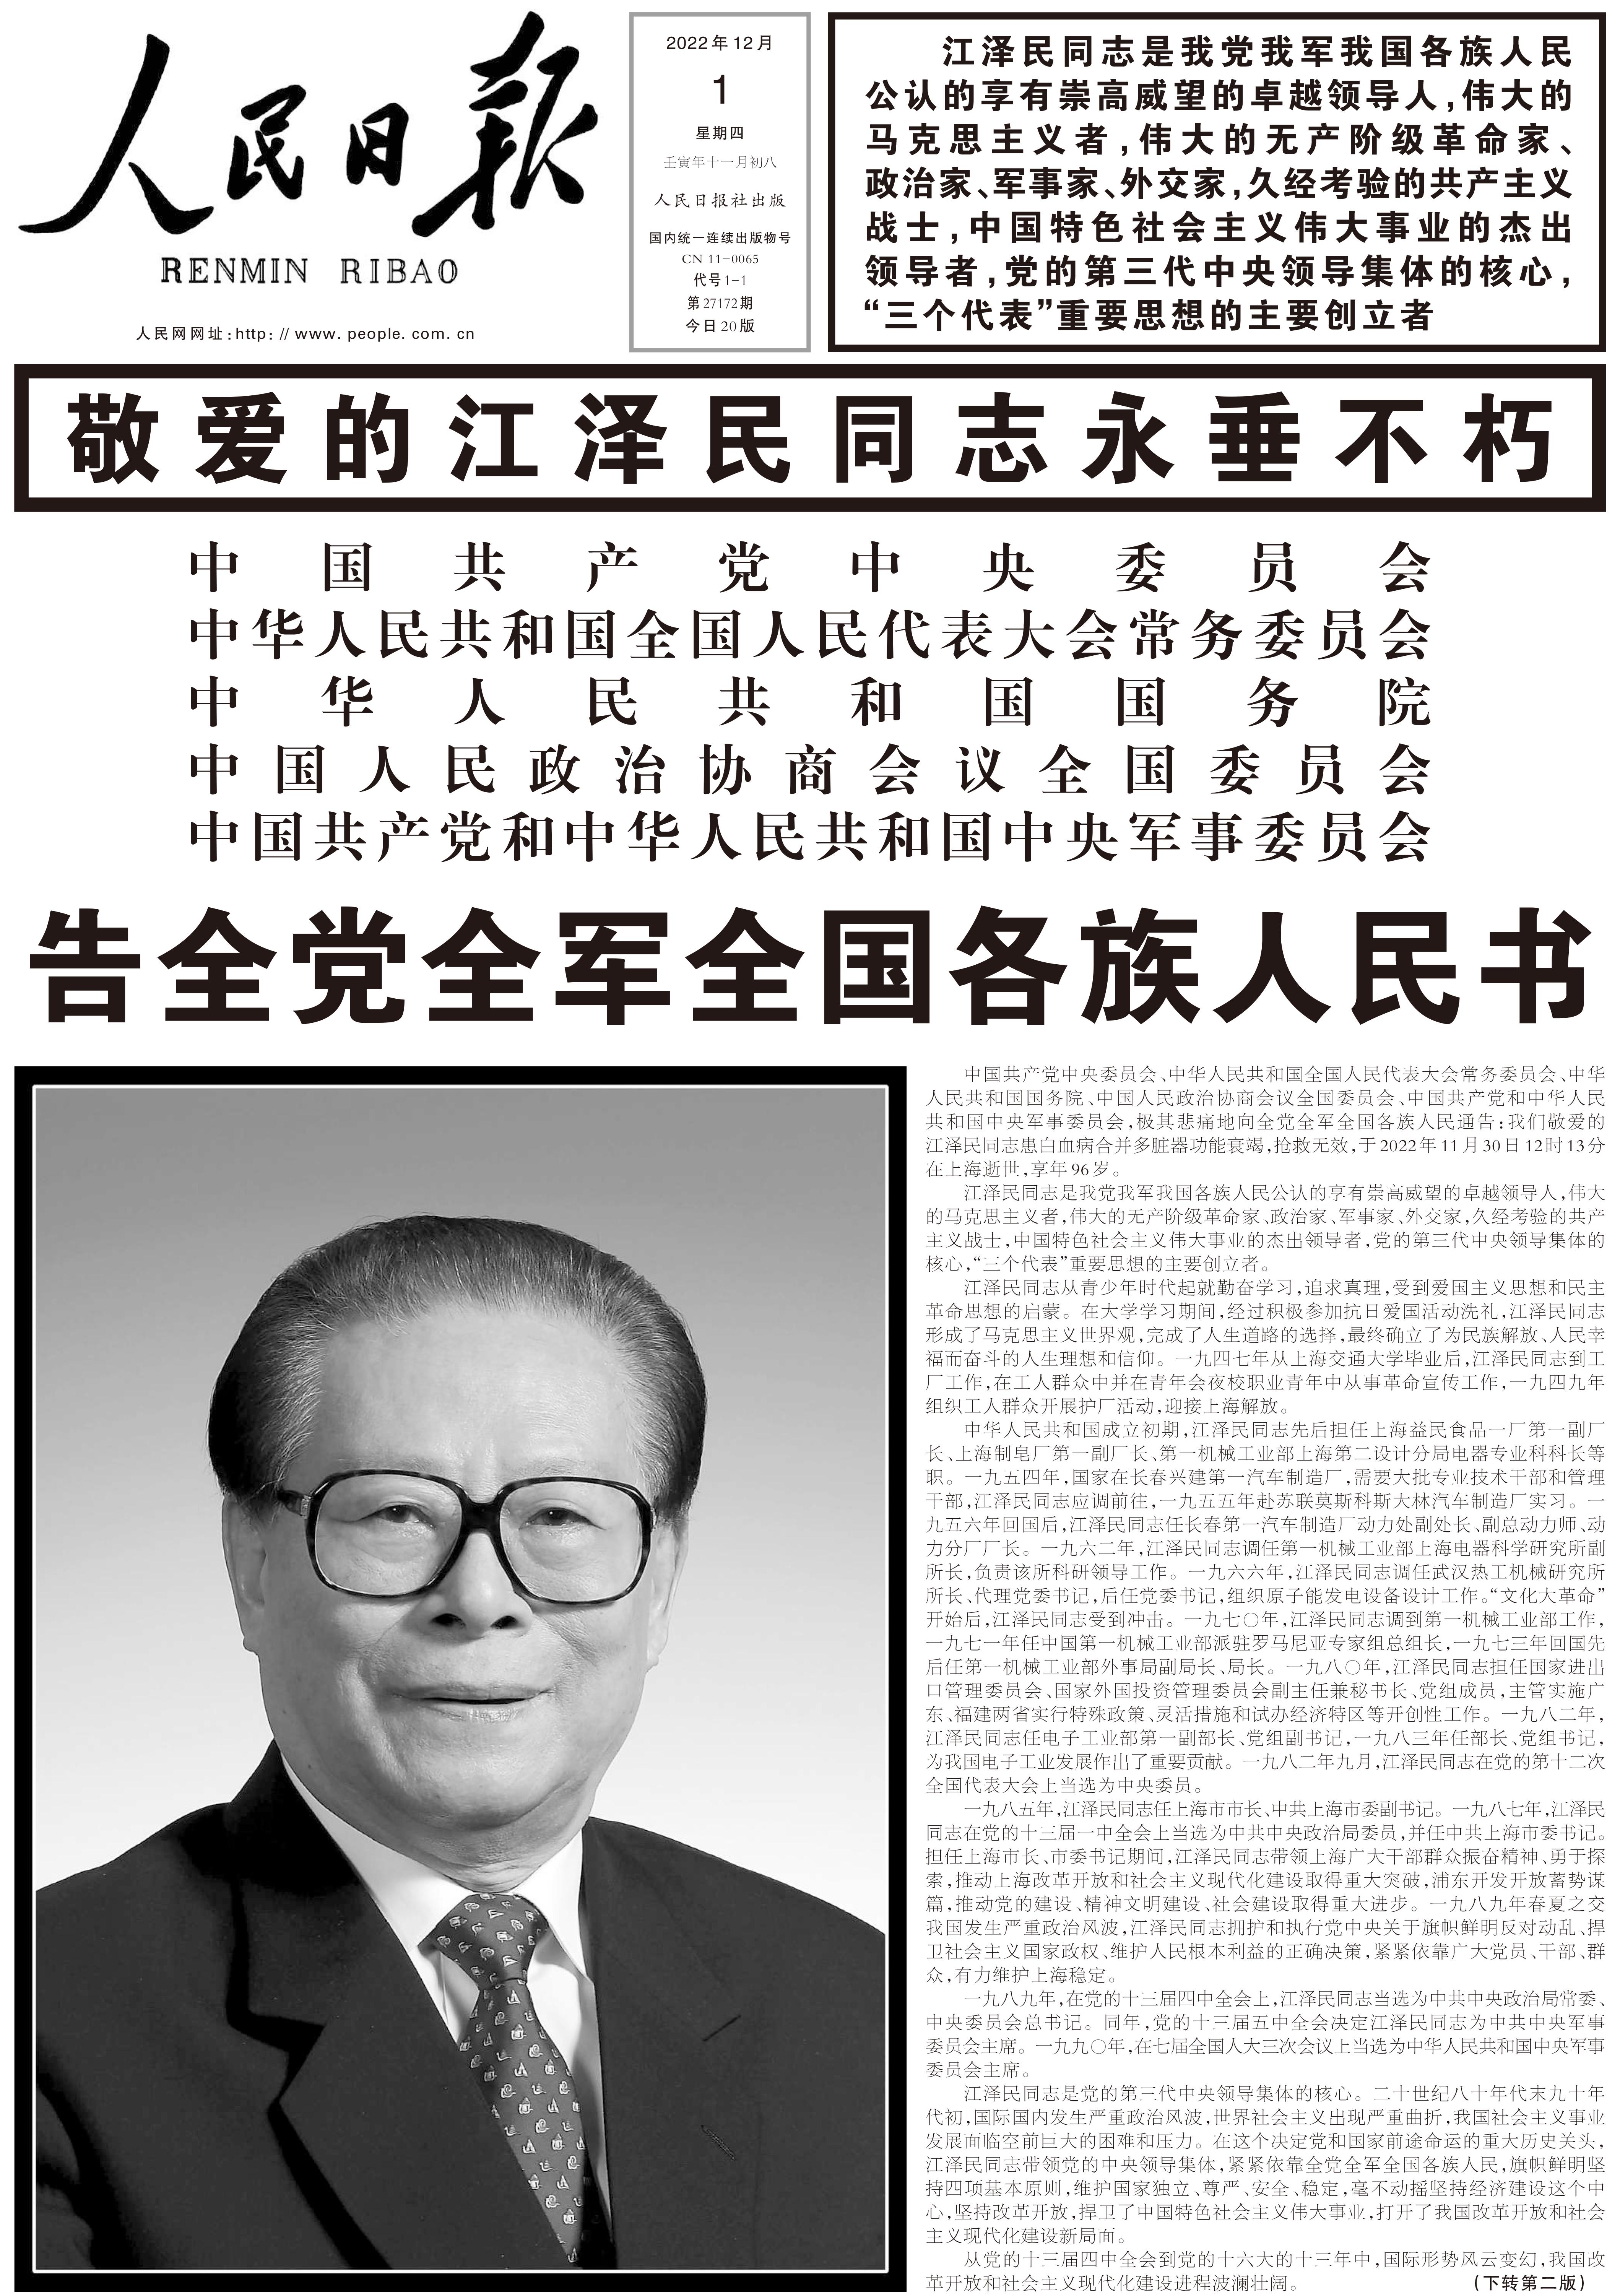 今日读报丨中央主要媒体头版：敬爱的江泽民同志永垂不朽